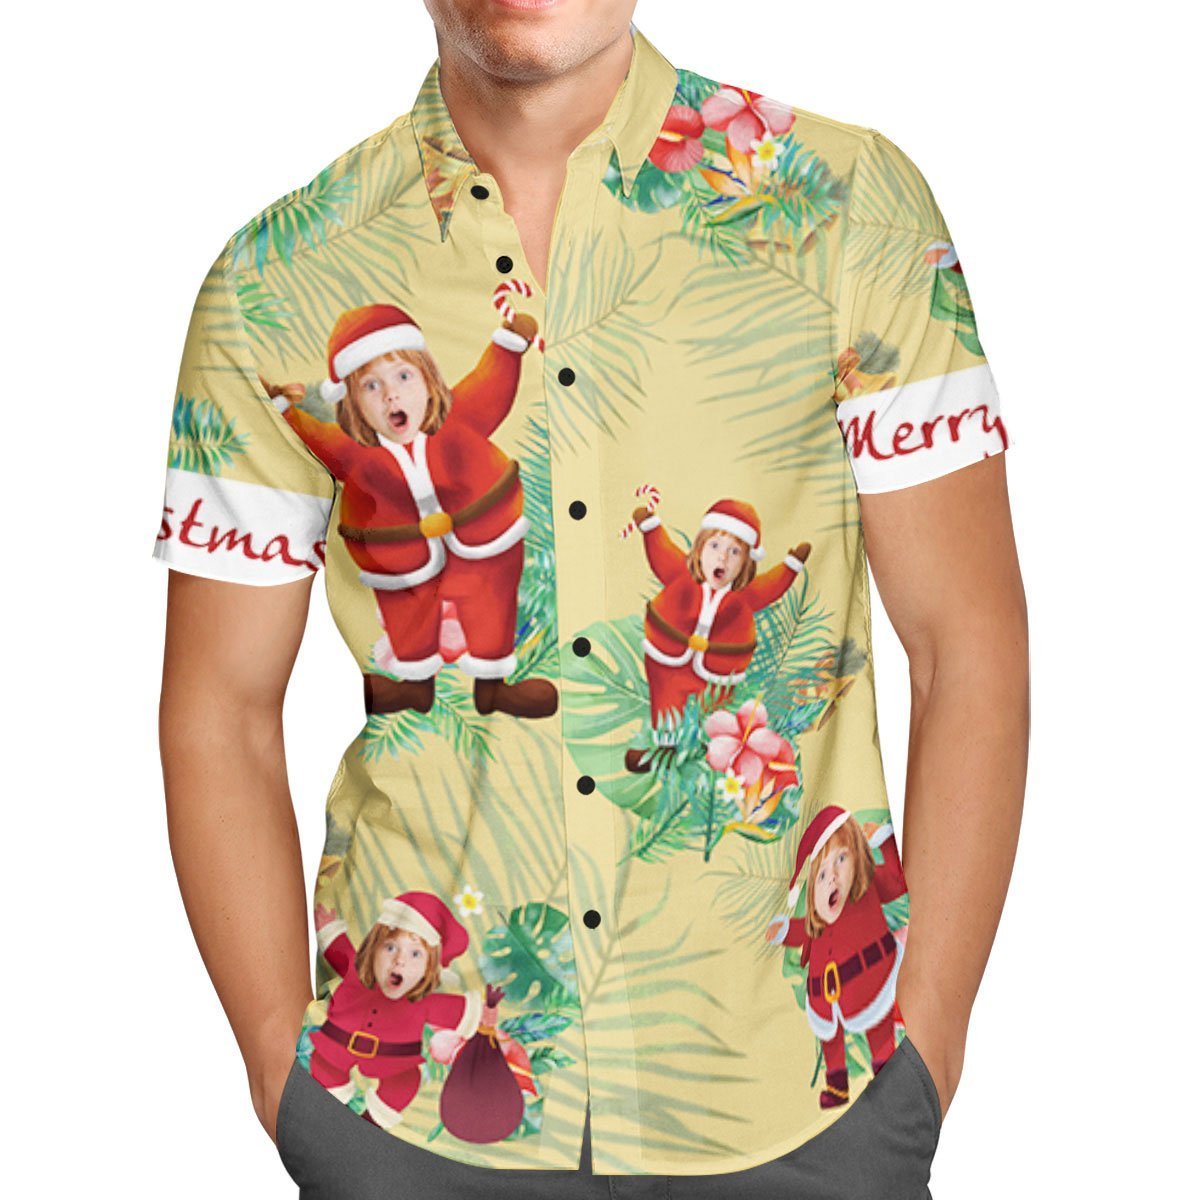 Kundenspezifisches Gesicht-personalisiertes Weihnachtshawaiianhemd-frohe Weihnacht-weihnachtsmann-feriengeschenke - soufeelde